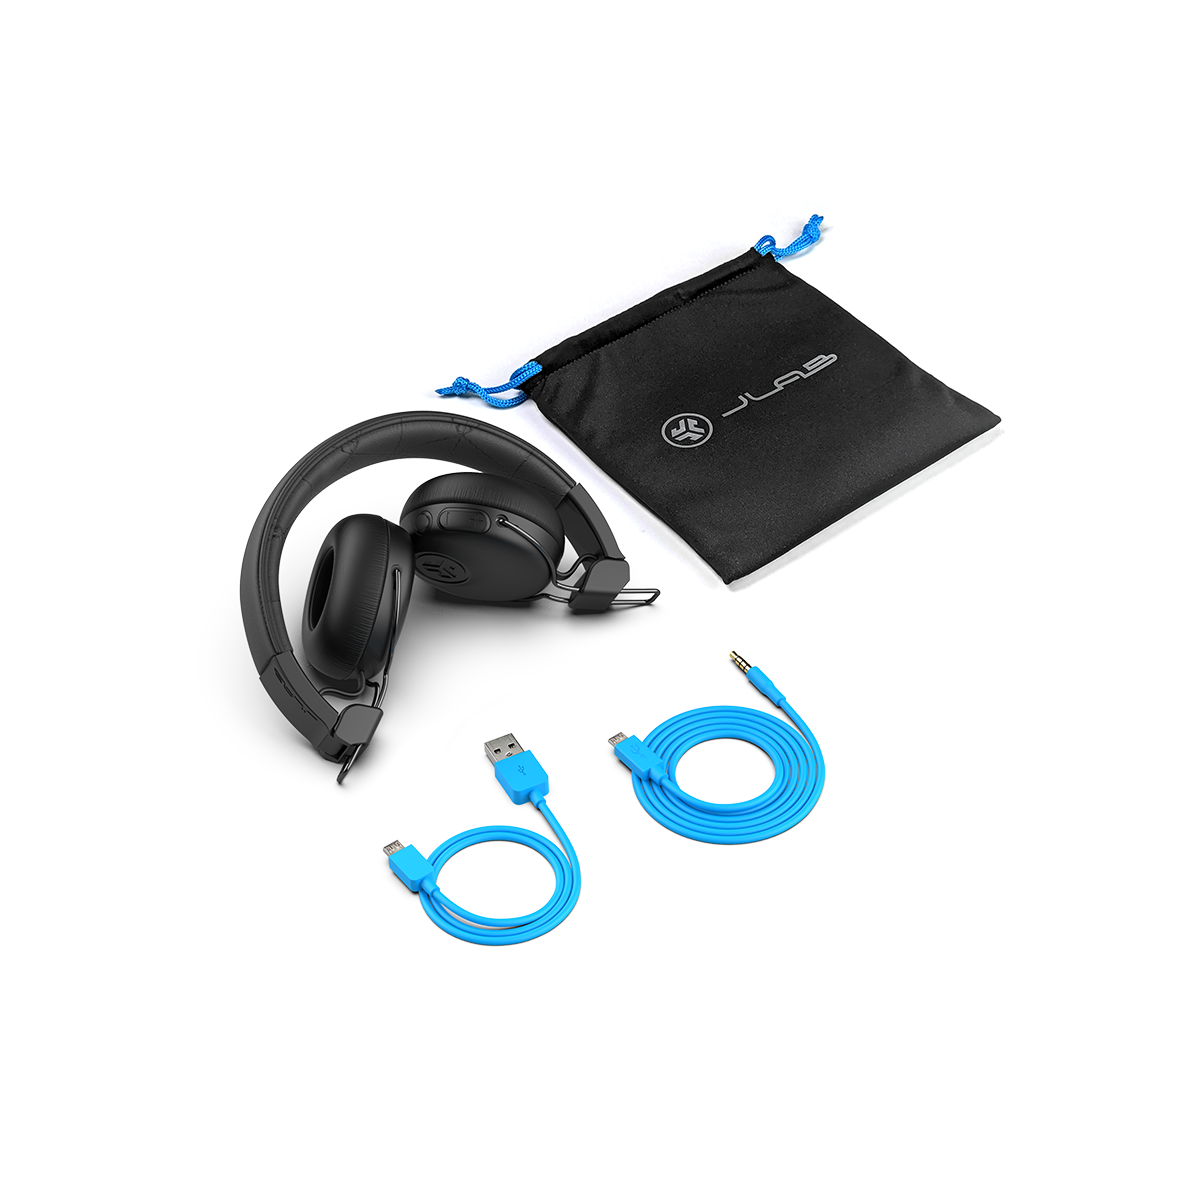 Tai nghe Bluetooth chụp tai TWS On-ear Jlab Studio ANC màu đen chống ồn thời gian nghe 34H Bluetooth 5.0 âm thanh EQ3 - Hàng chính hãng - BH 2 năm 1 đổi 1